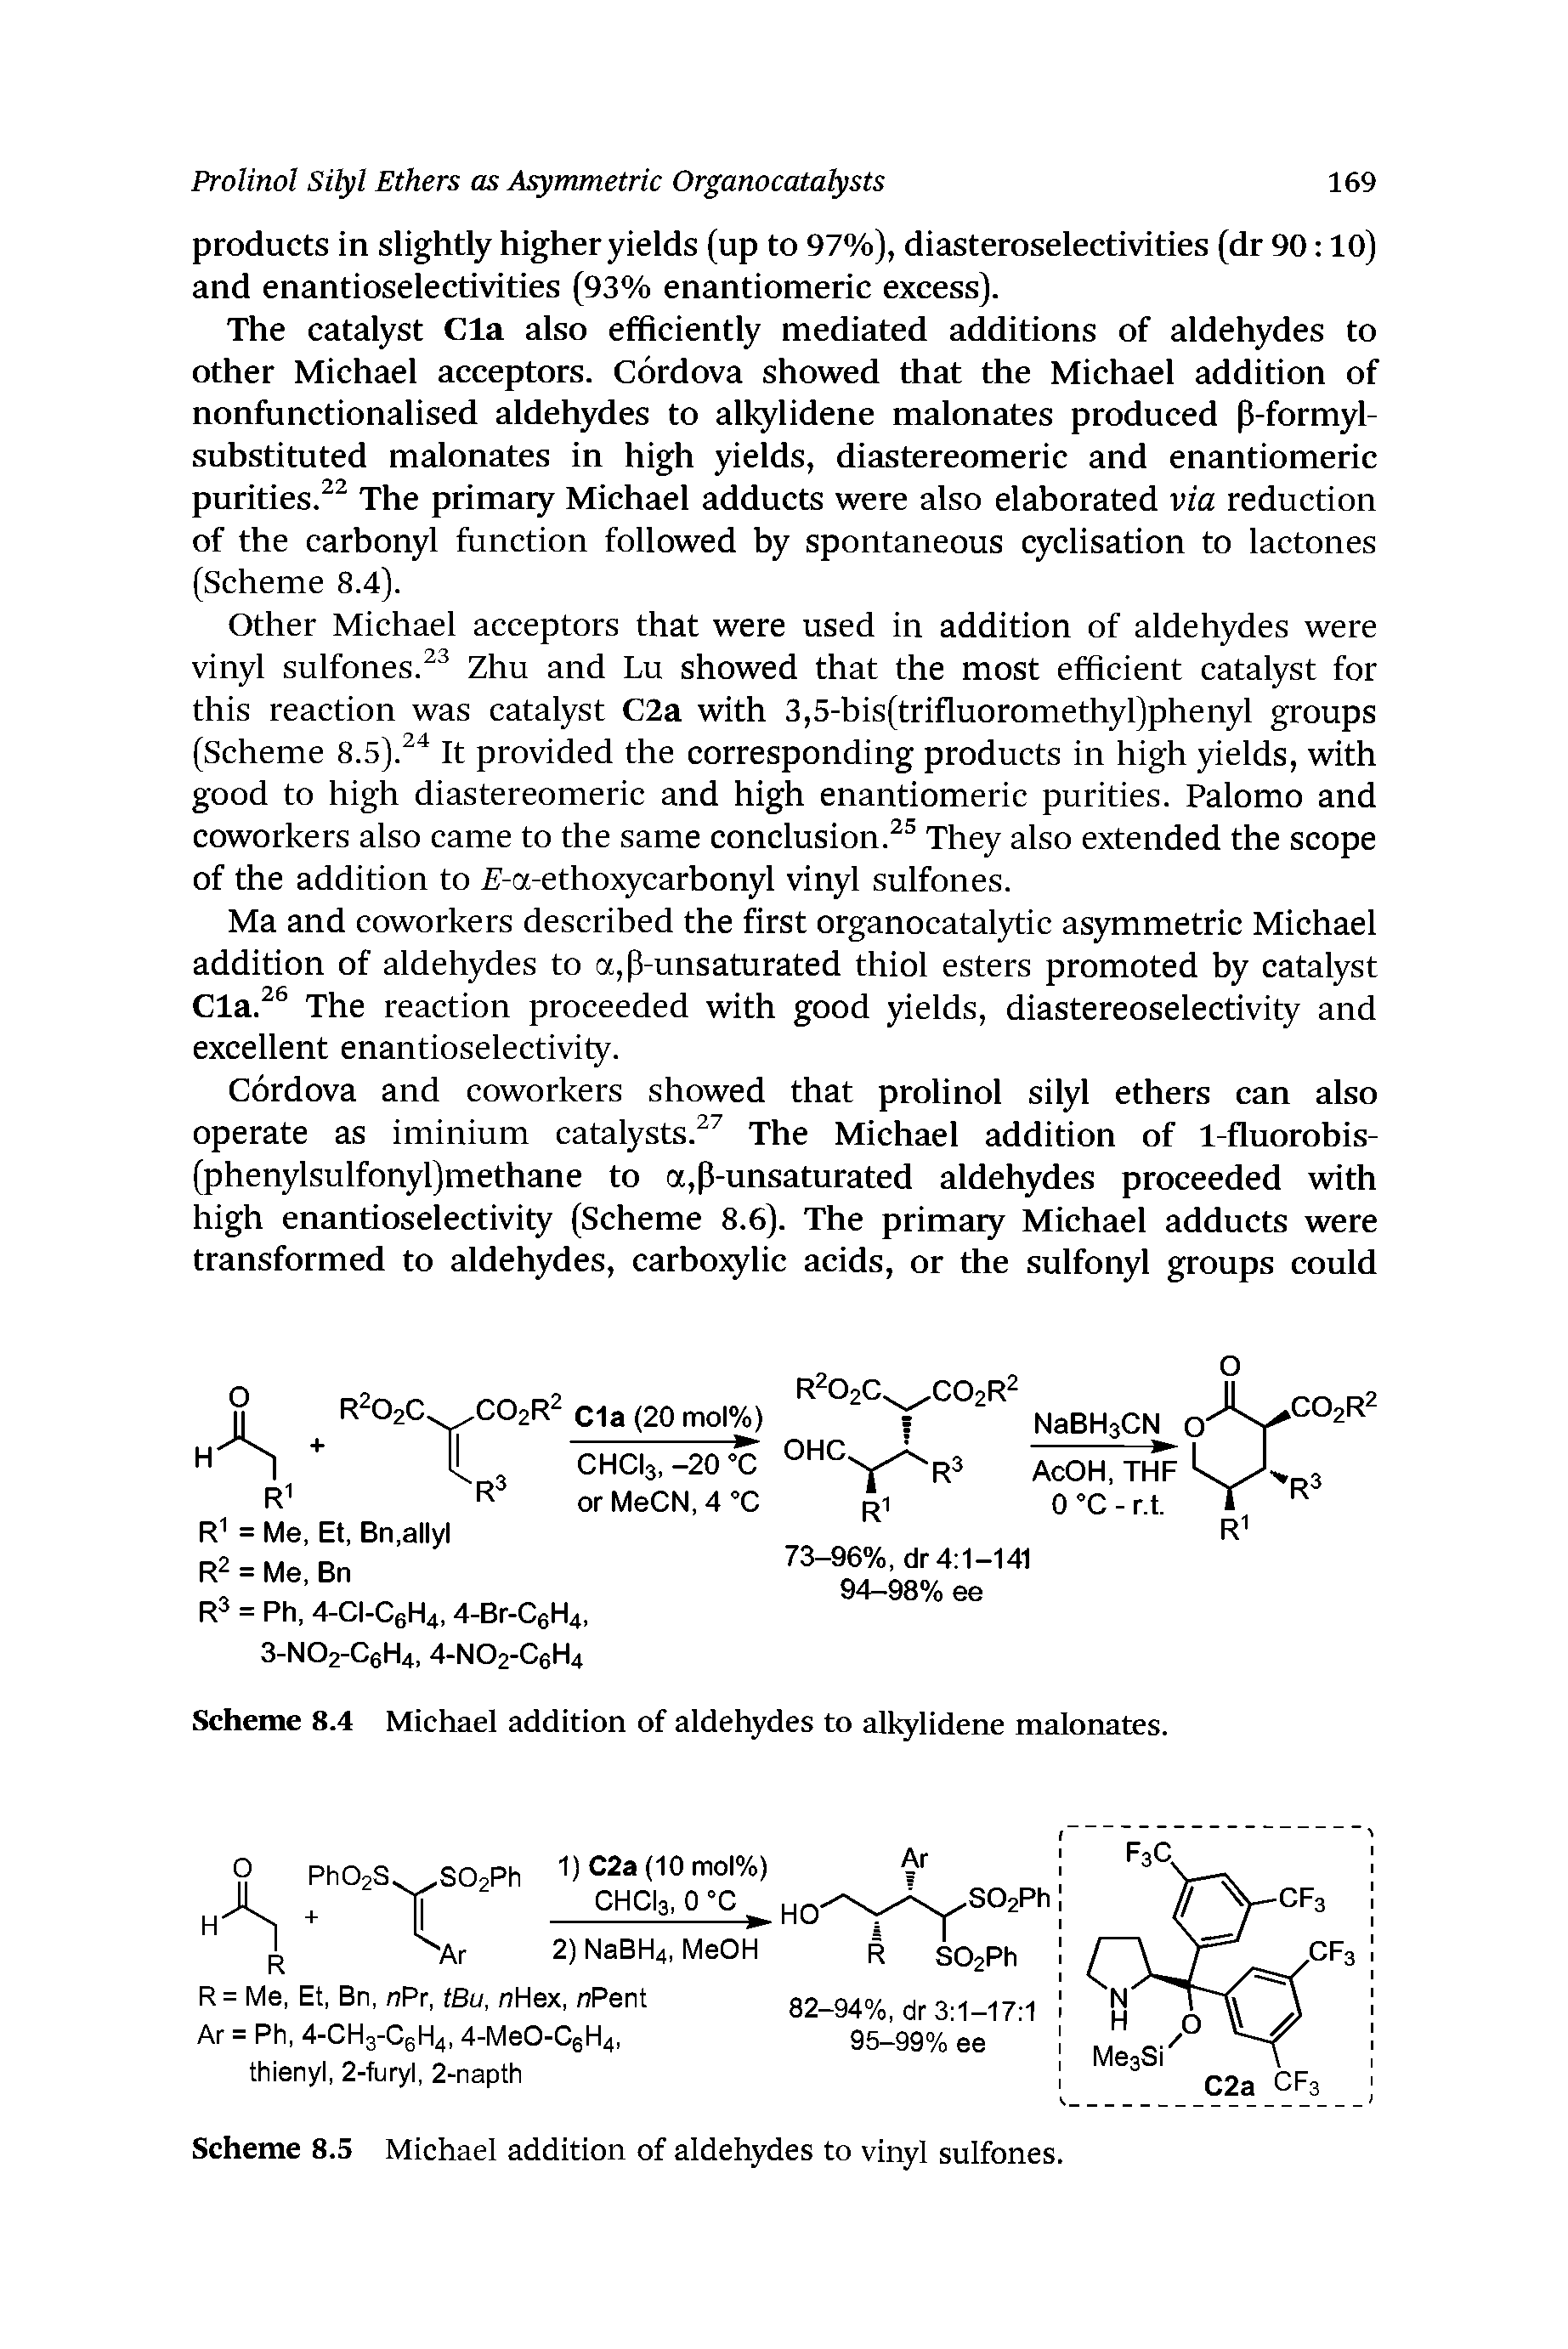 Scheme 8.5 Michael addition of aldehydes to vinyl sulfones.